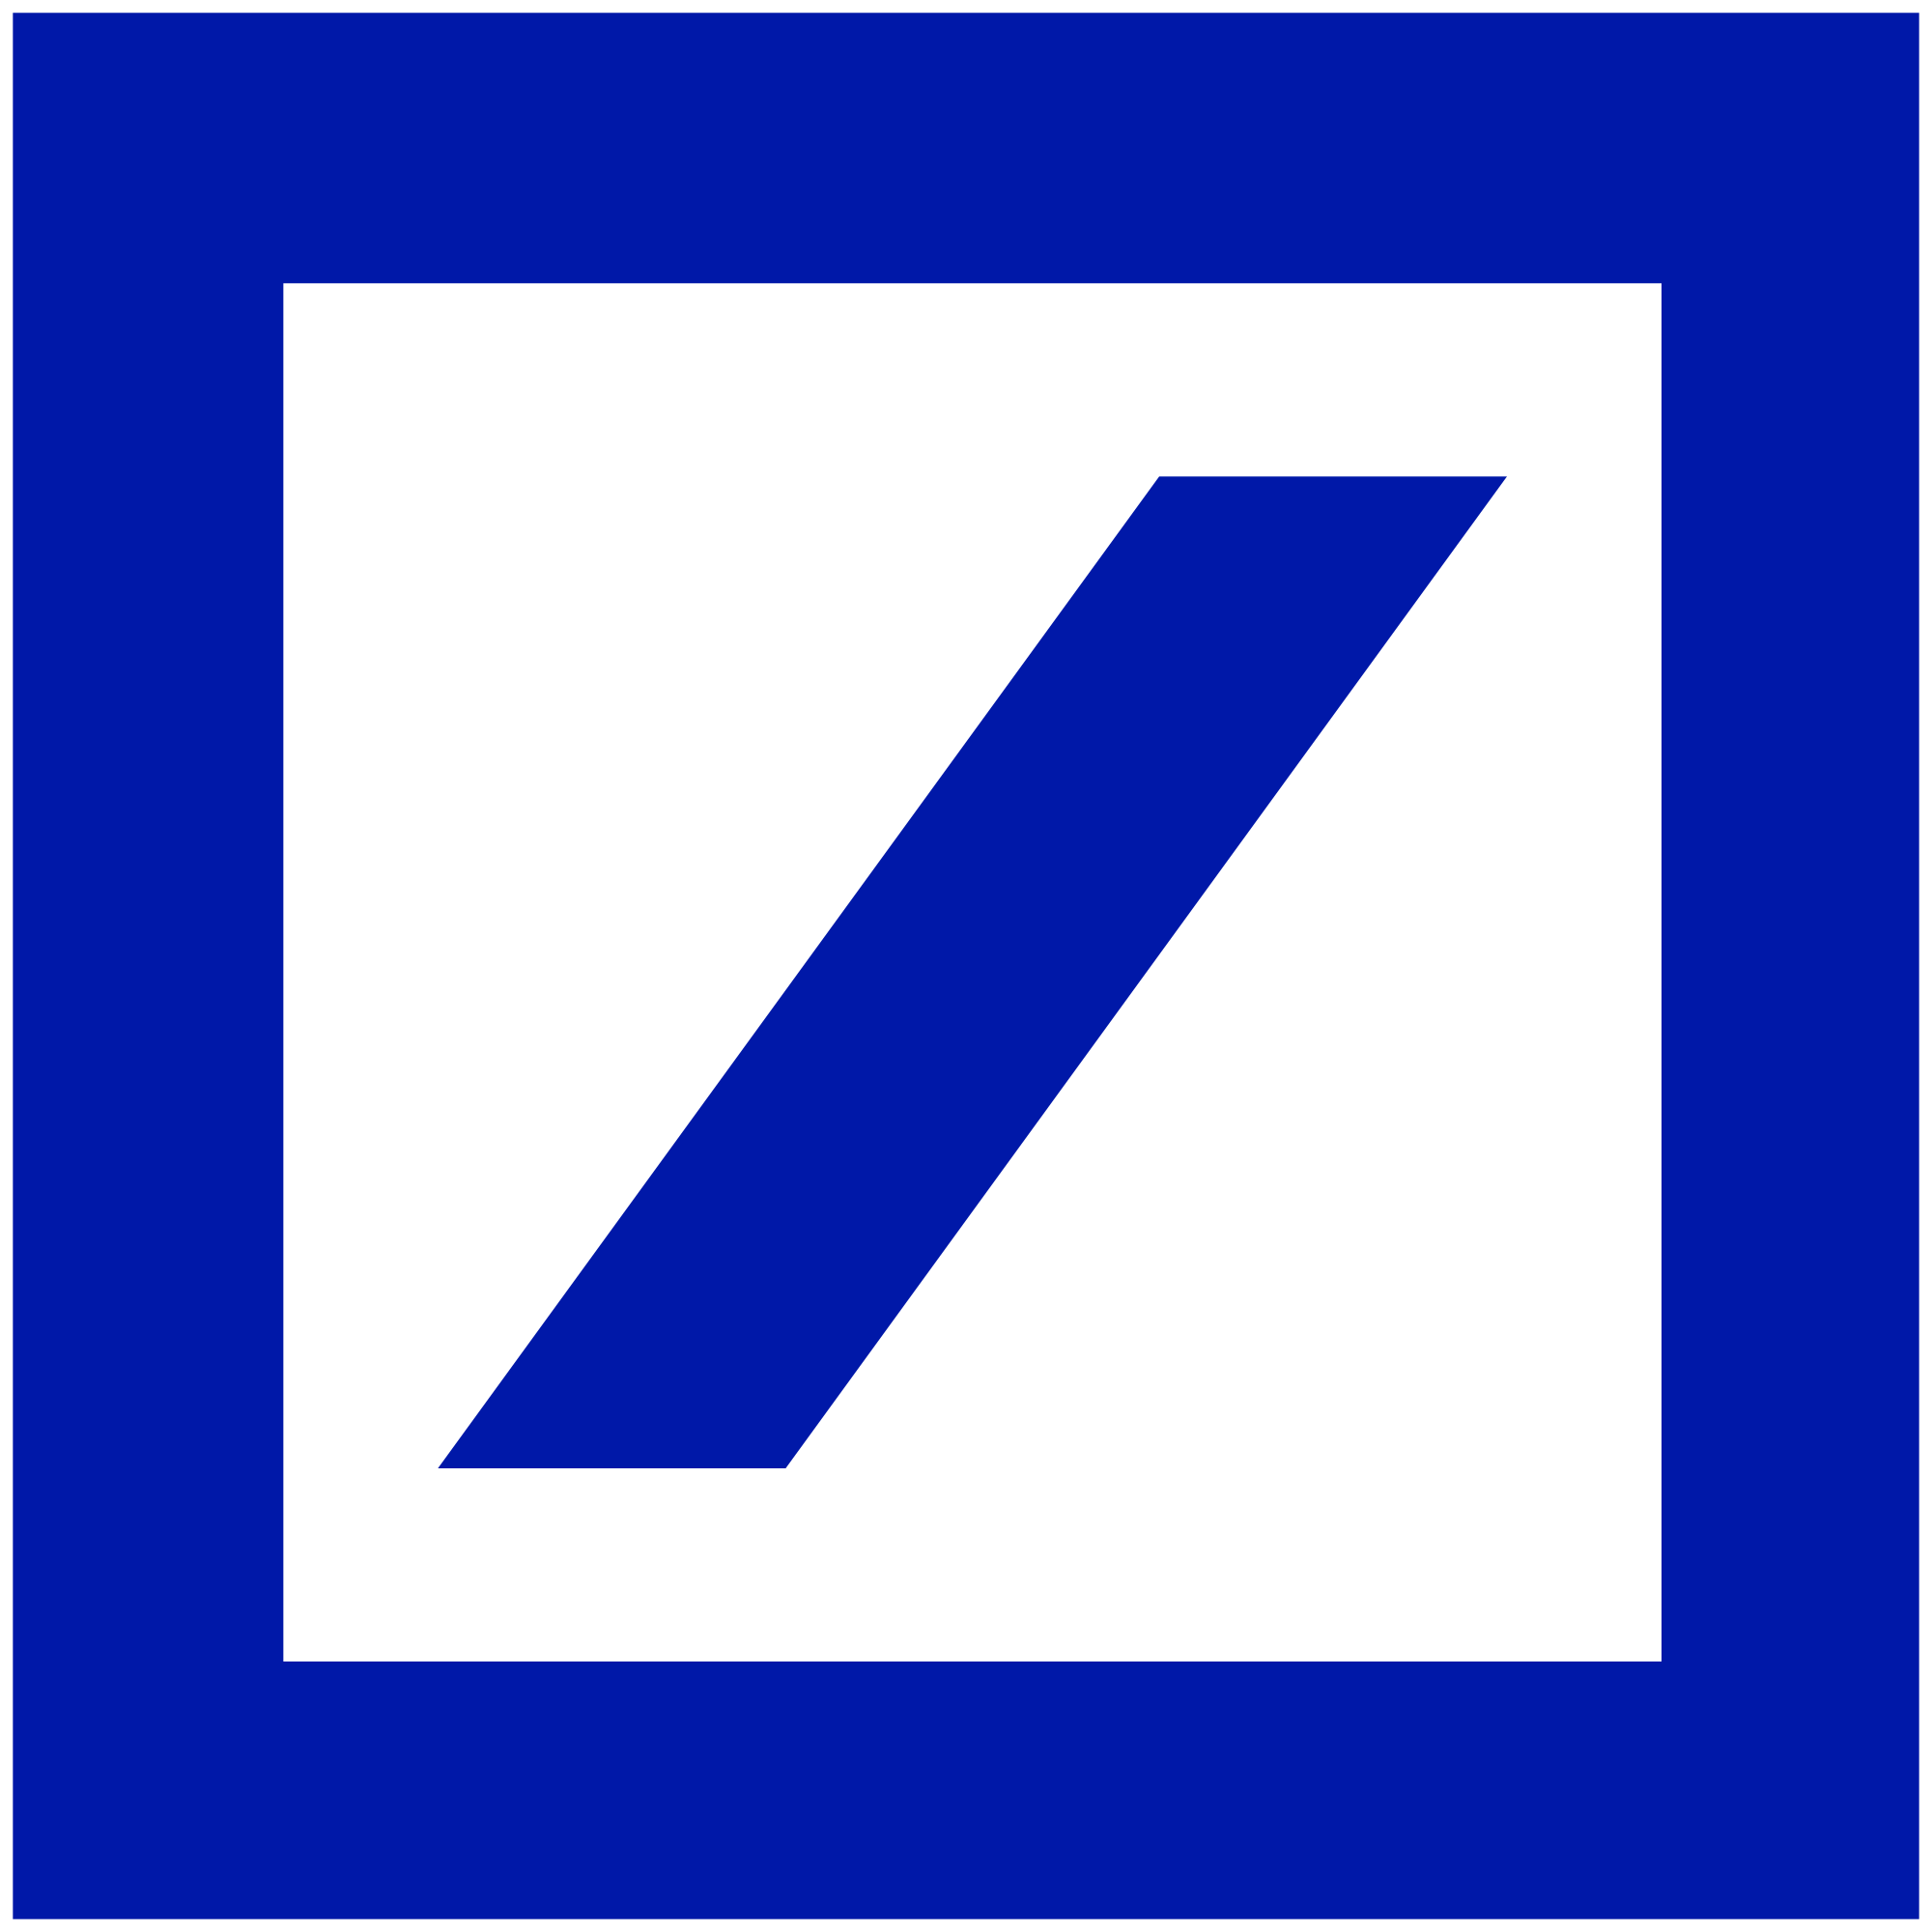 Blue Square with Line Logo - Network – Factory.com